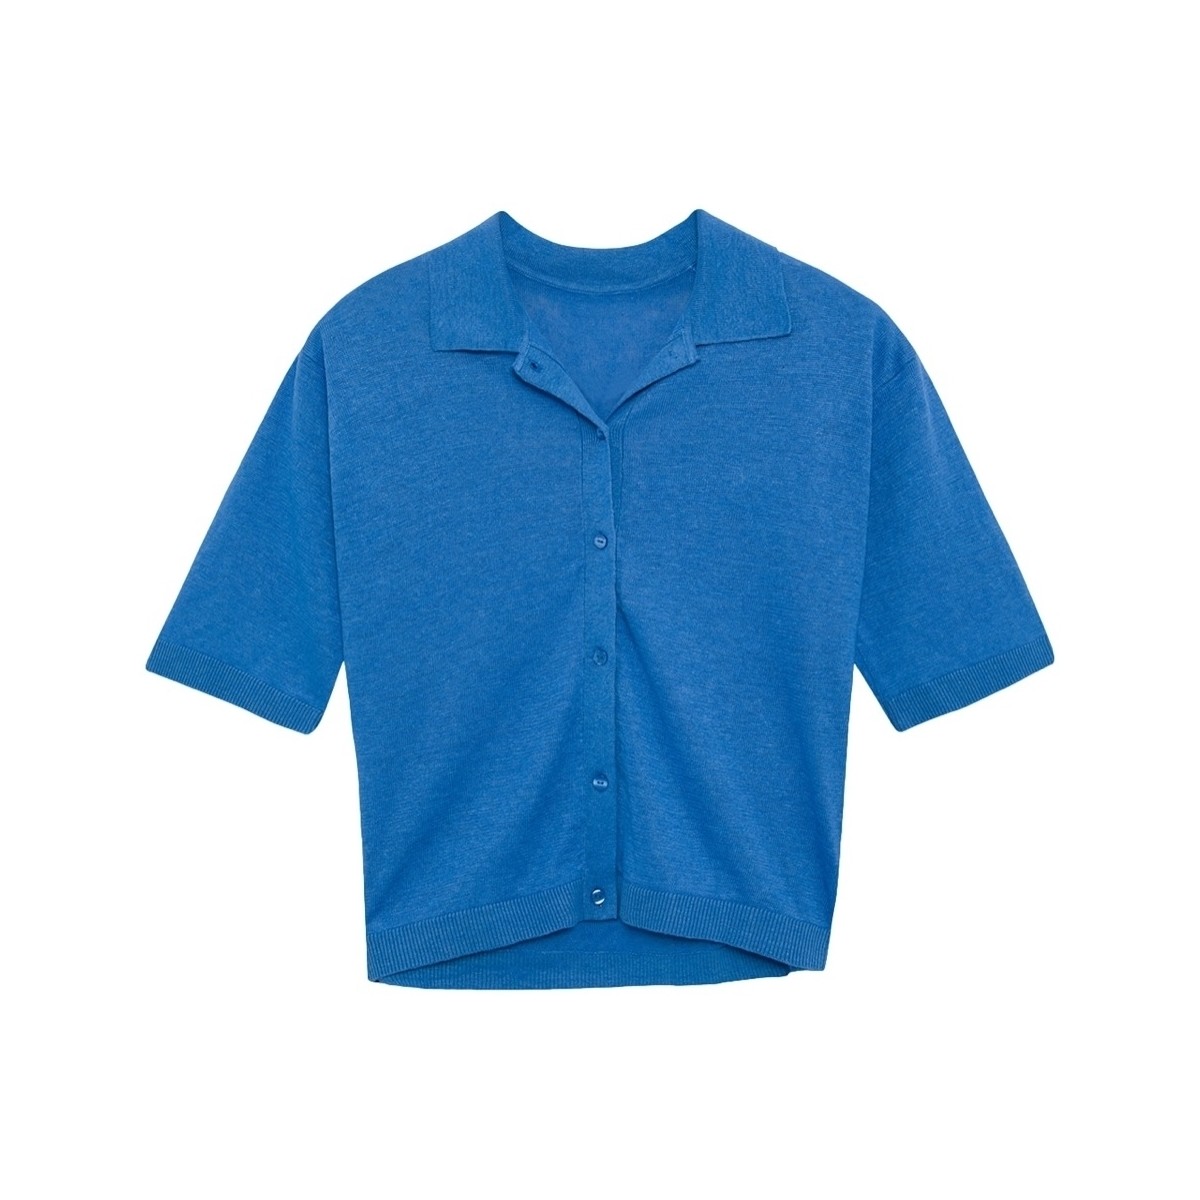 Textiel Dames Tops / Blousjes Ecoalf Juniperalf Shirt - French Blue Blauw